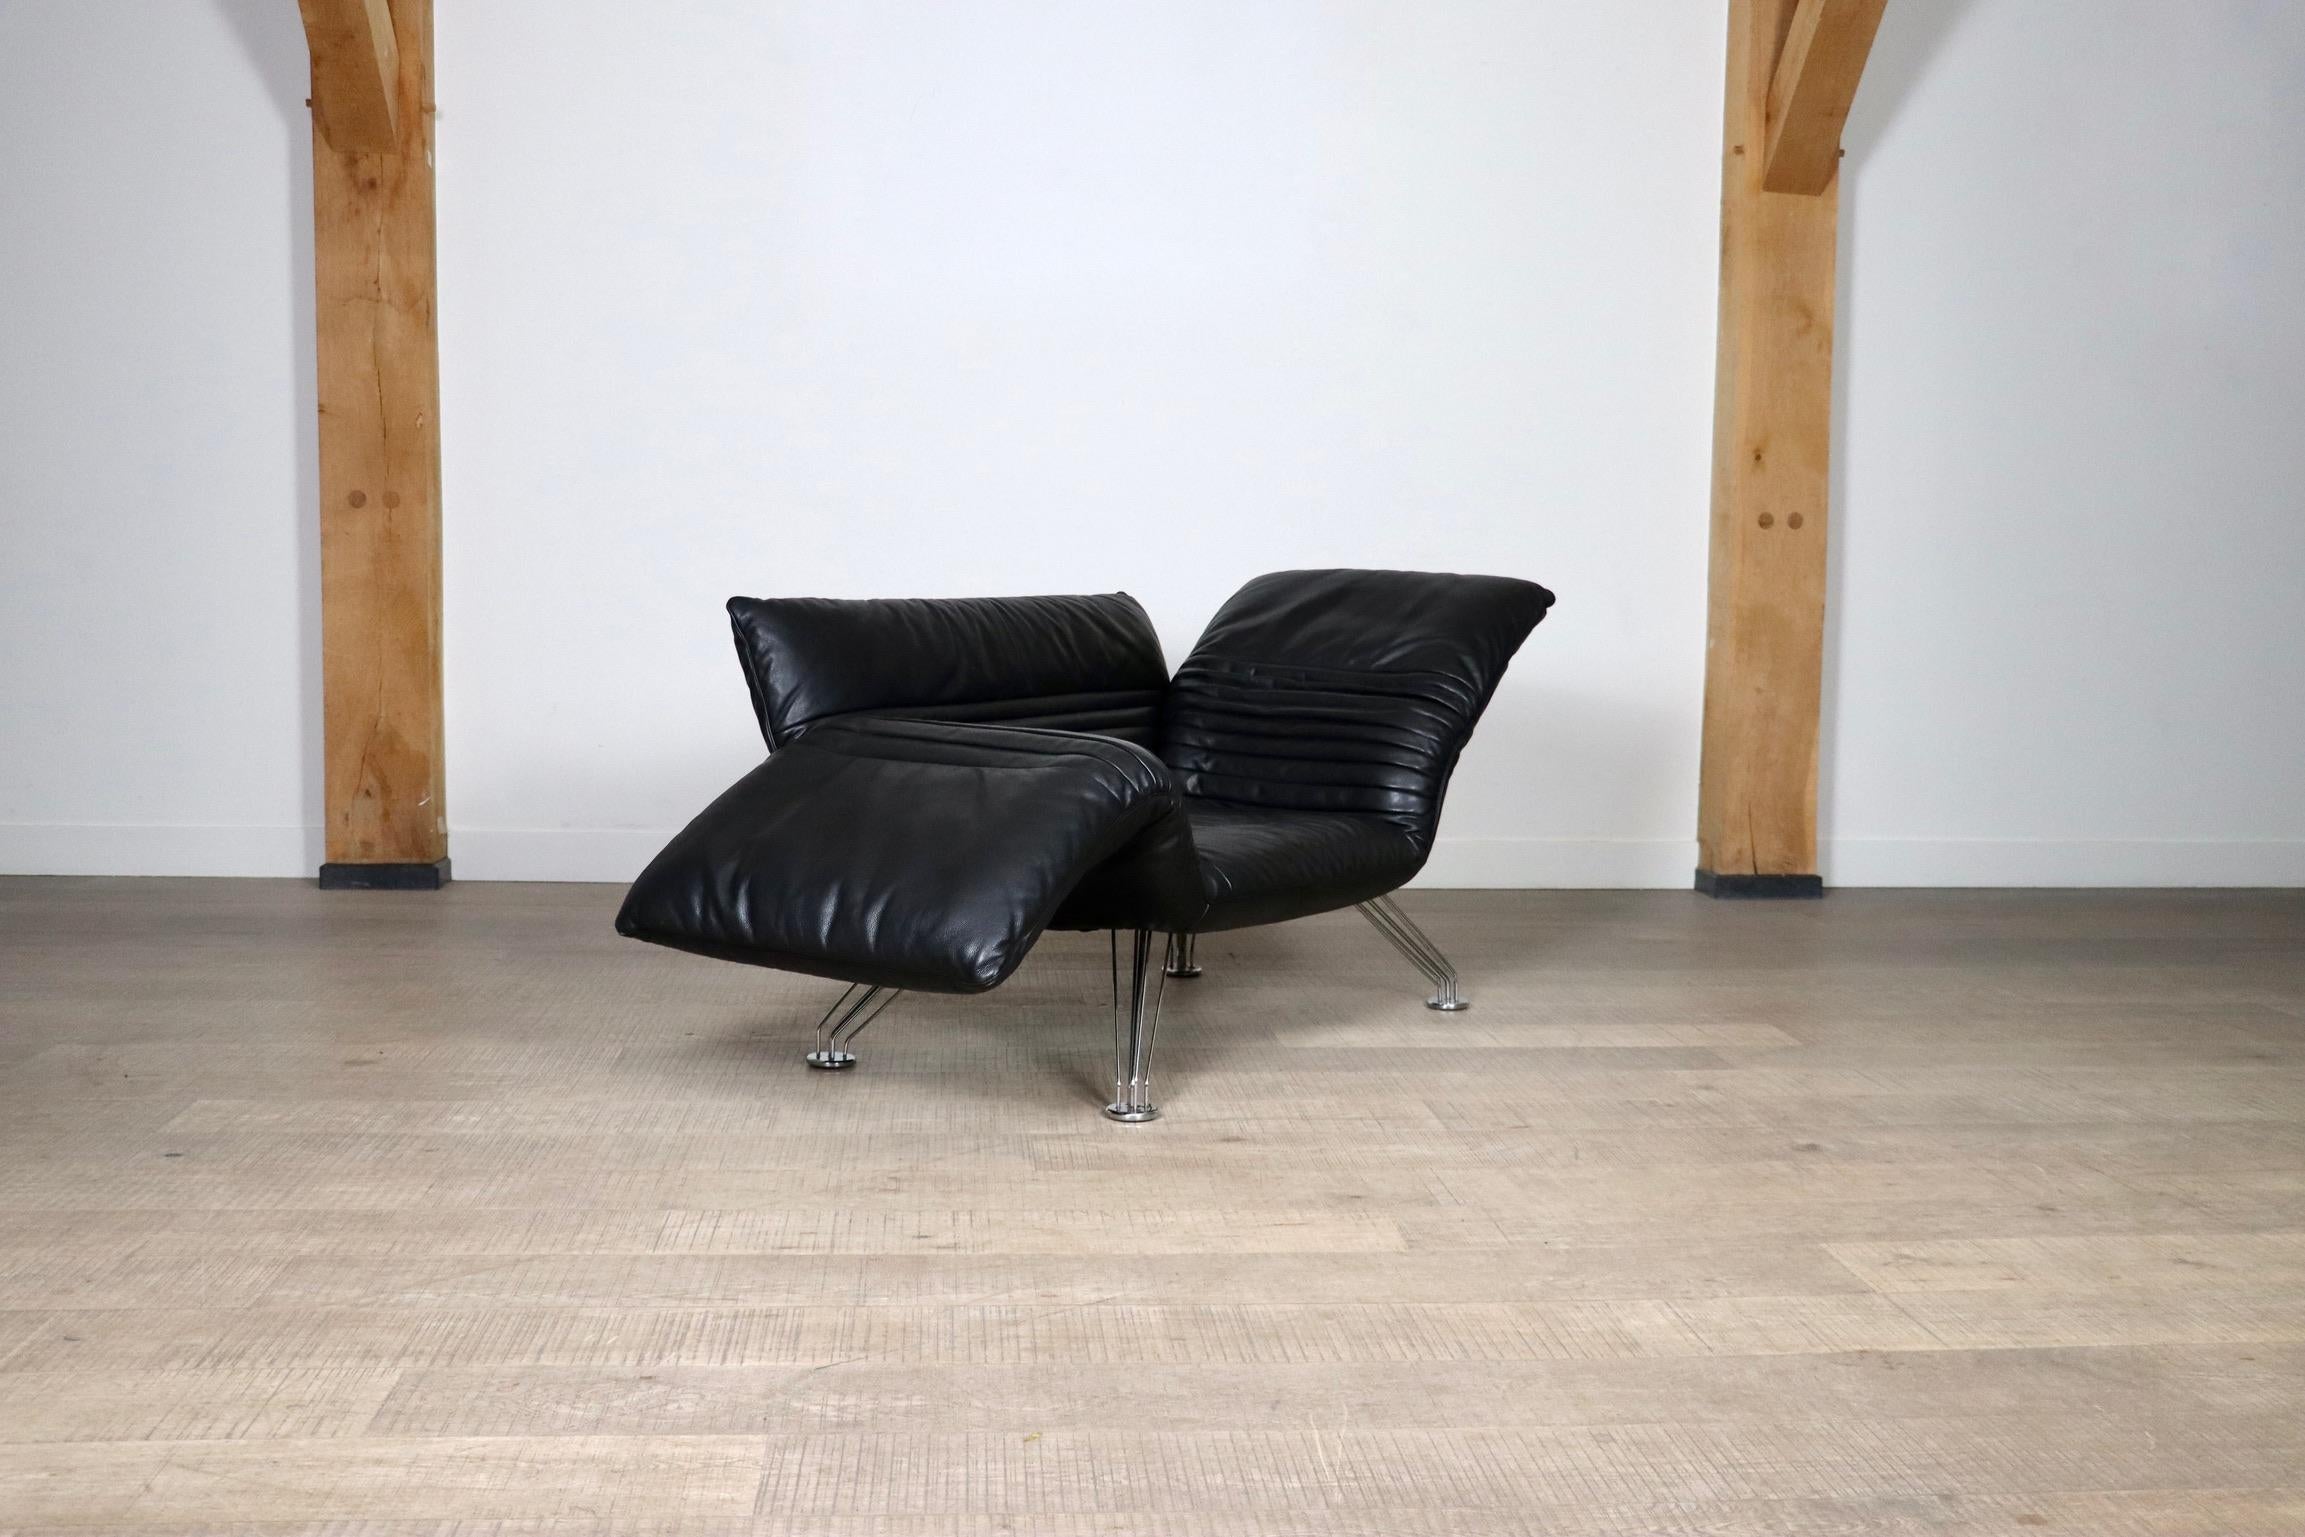 Metal De Sede DS-142 Lounge Chair By Winfried Totzek In Black Leather, Switzerland 198